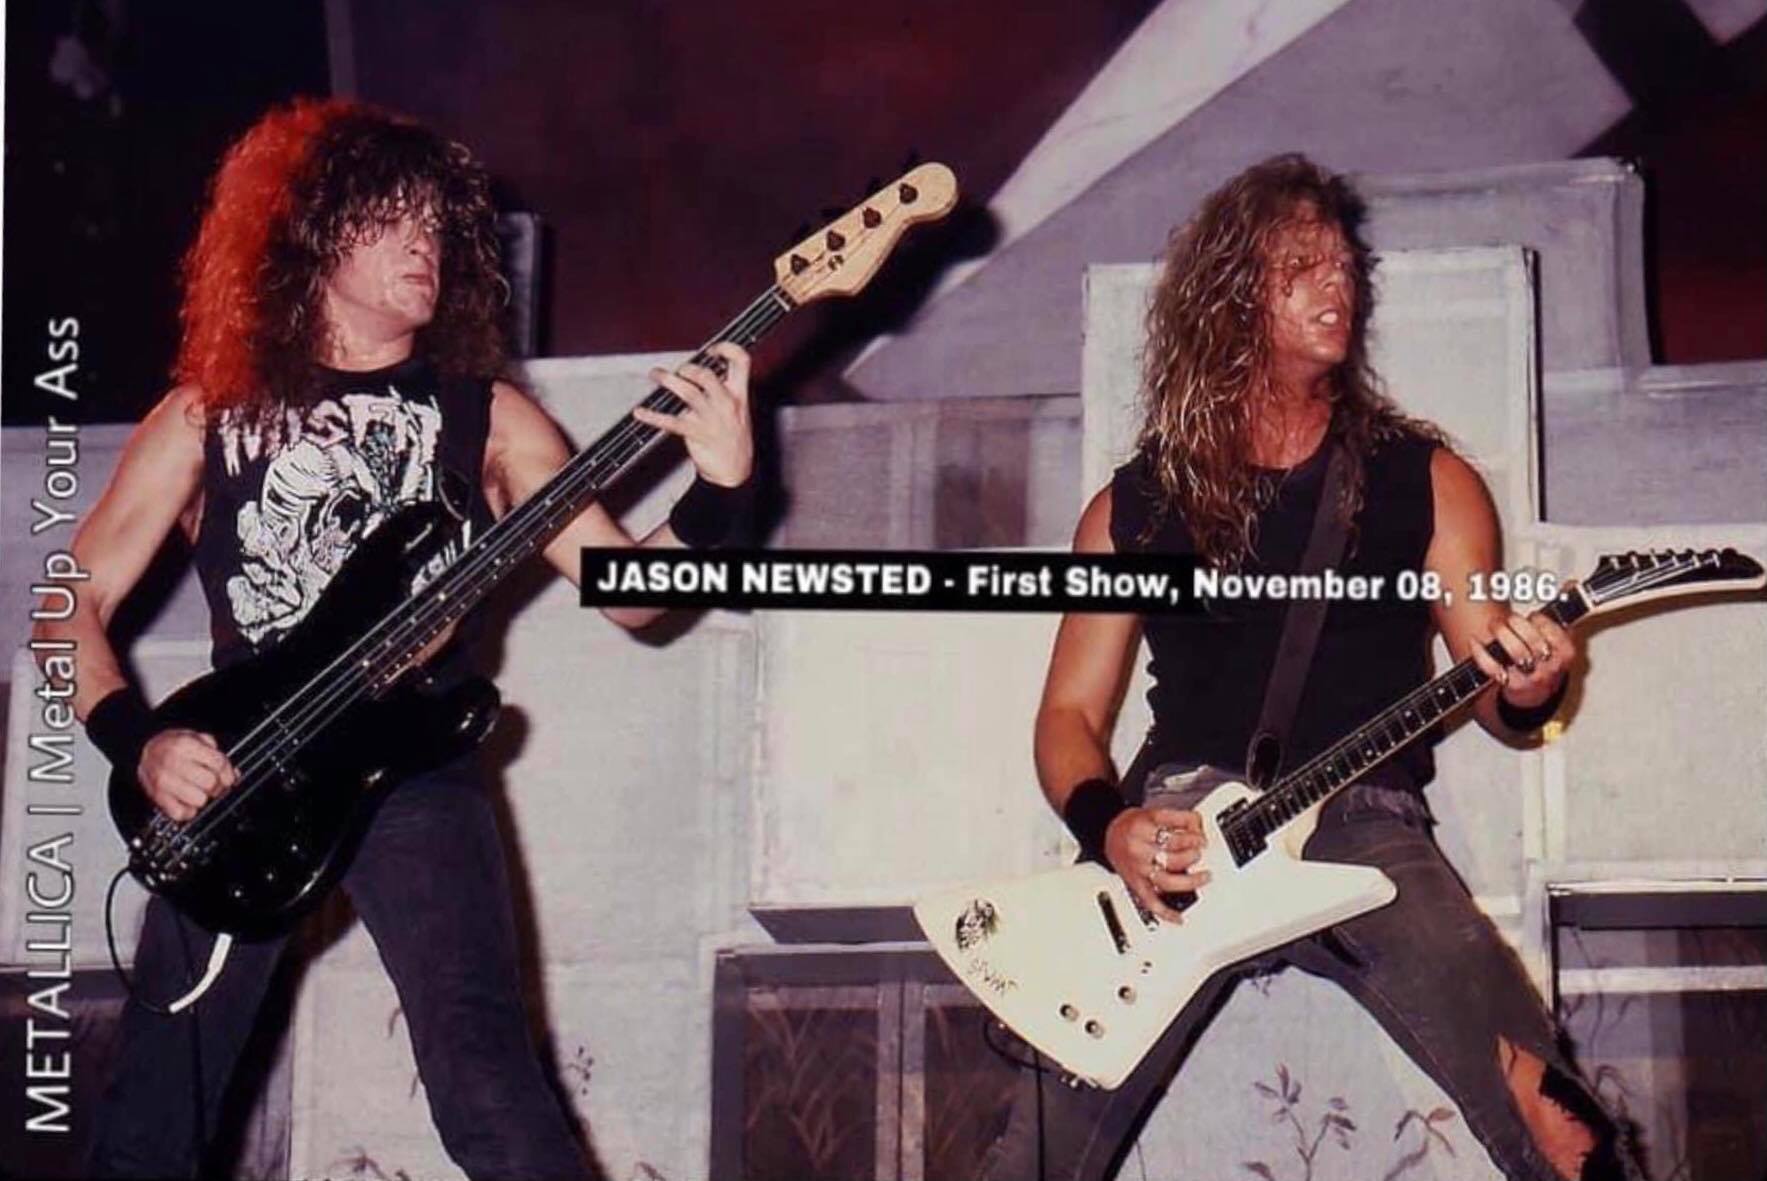 Efemeride del dia: un 8 de noviembre de 1986 hacia su debut en vivo en Metallica Jason Newsted